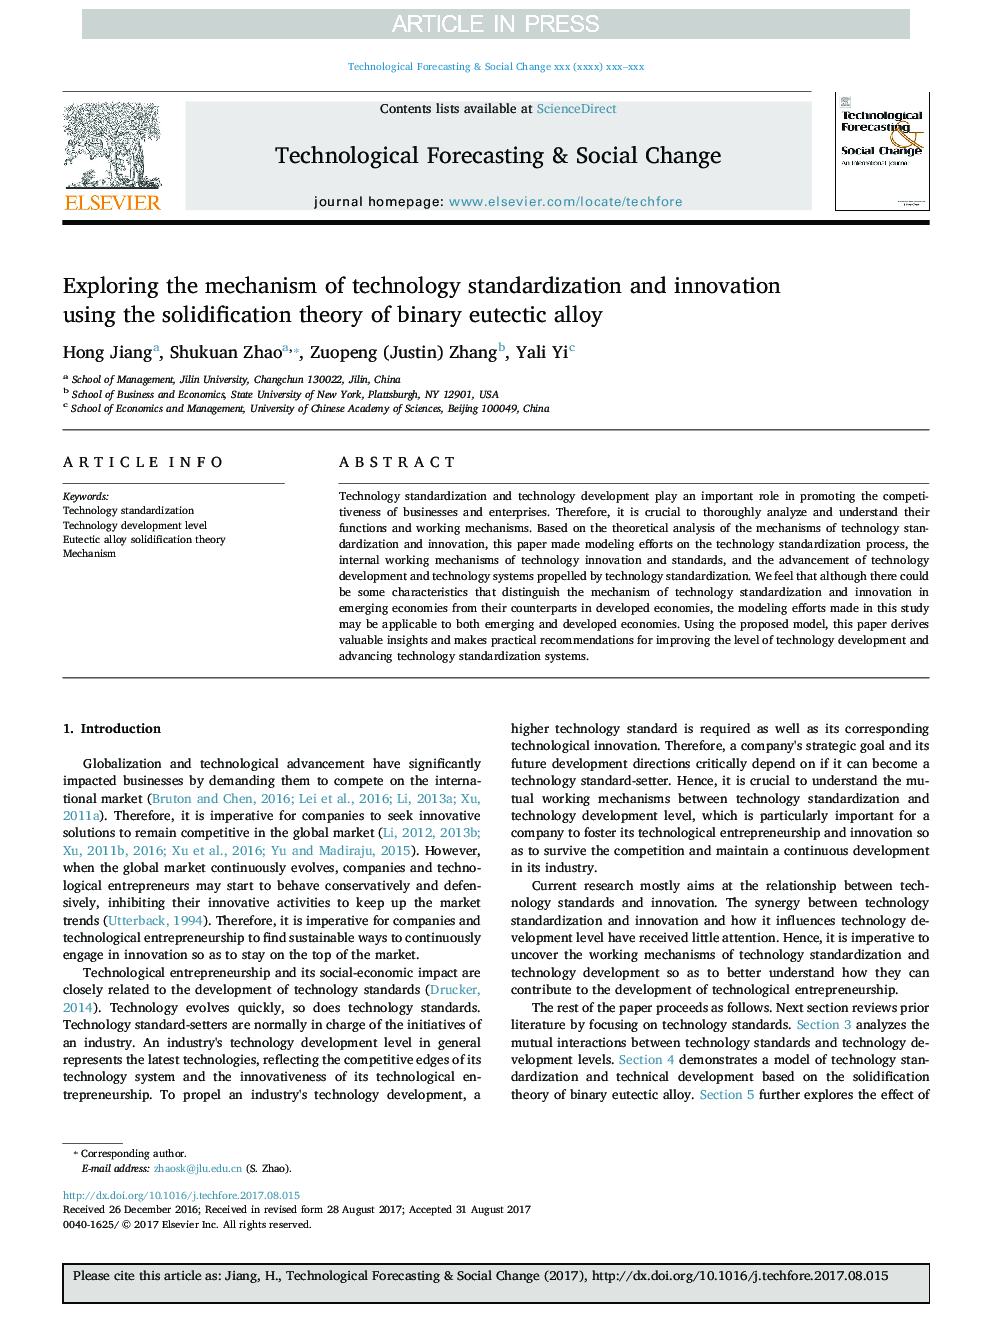 بررسی مکانیزم استاندارد سازی تکنولوژی و نوآوری با استفاده از تئوری انجماد از آلیاژ اکتیو دودویی